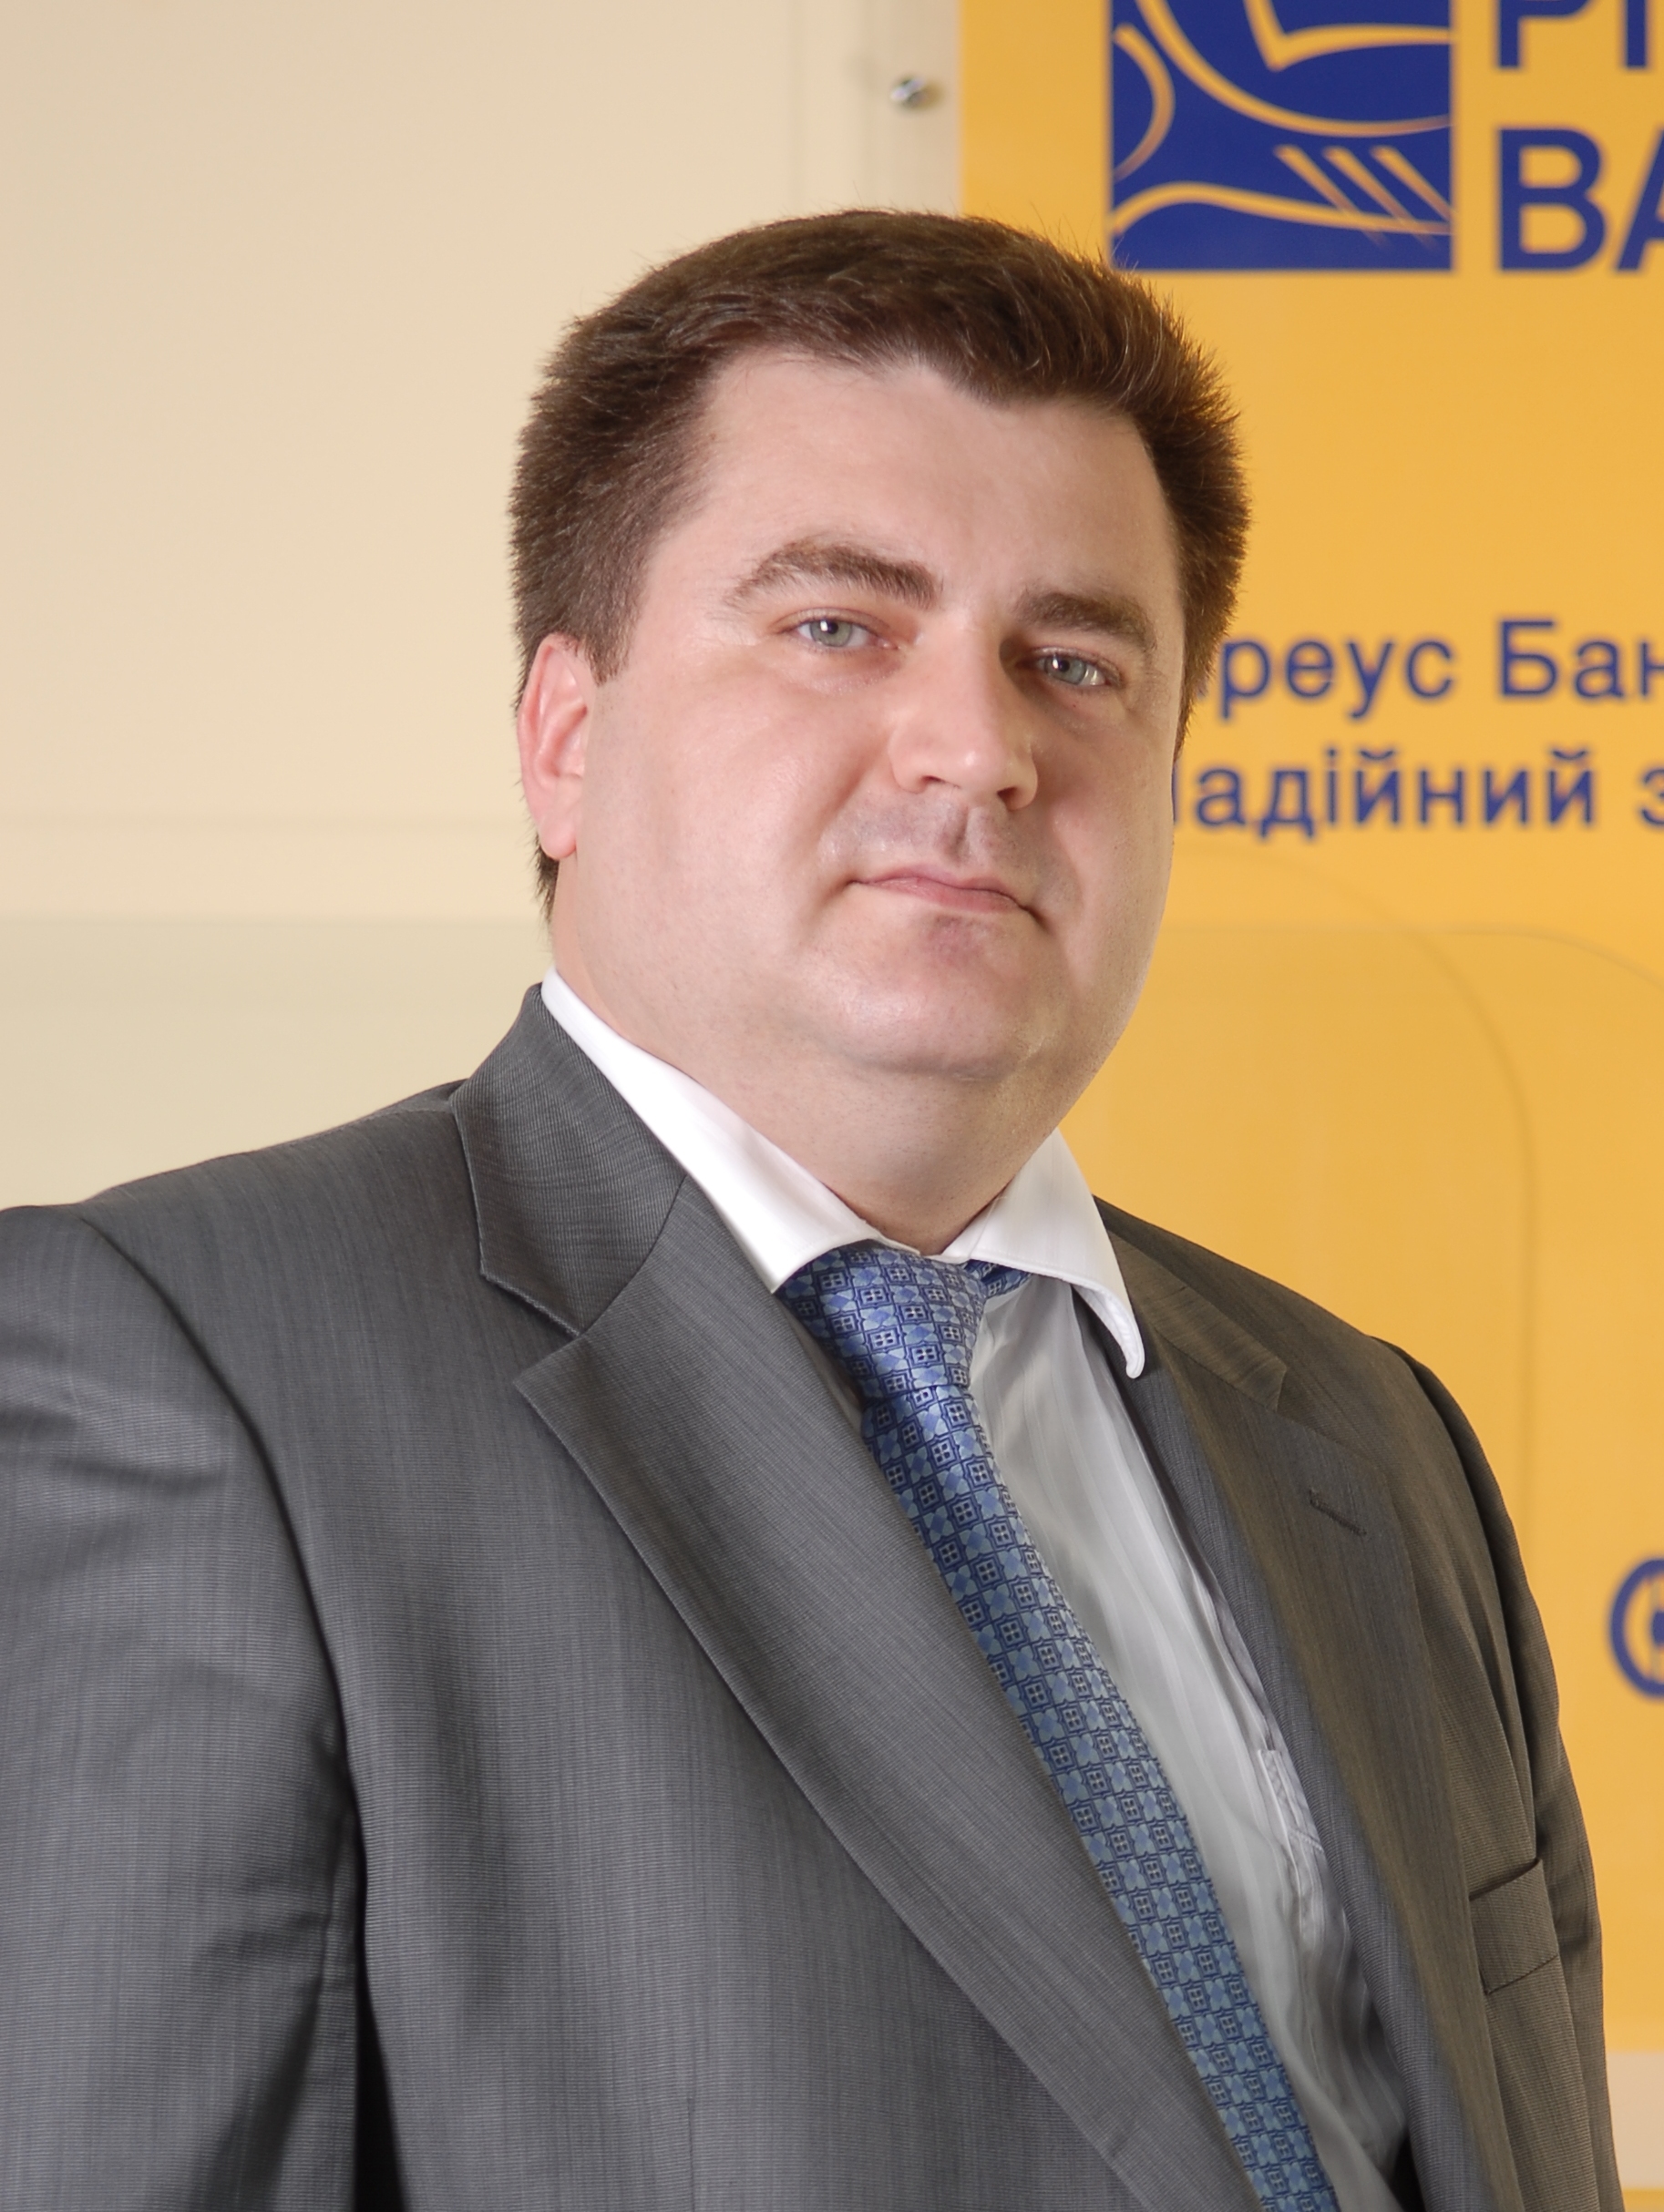 Dmytro Musienko, Piraeus Bank in Ukraine member of management board, director of branch network department